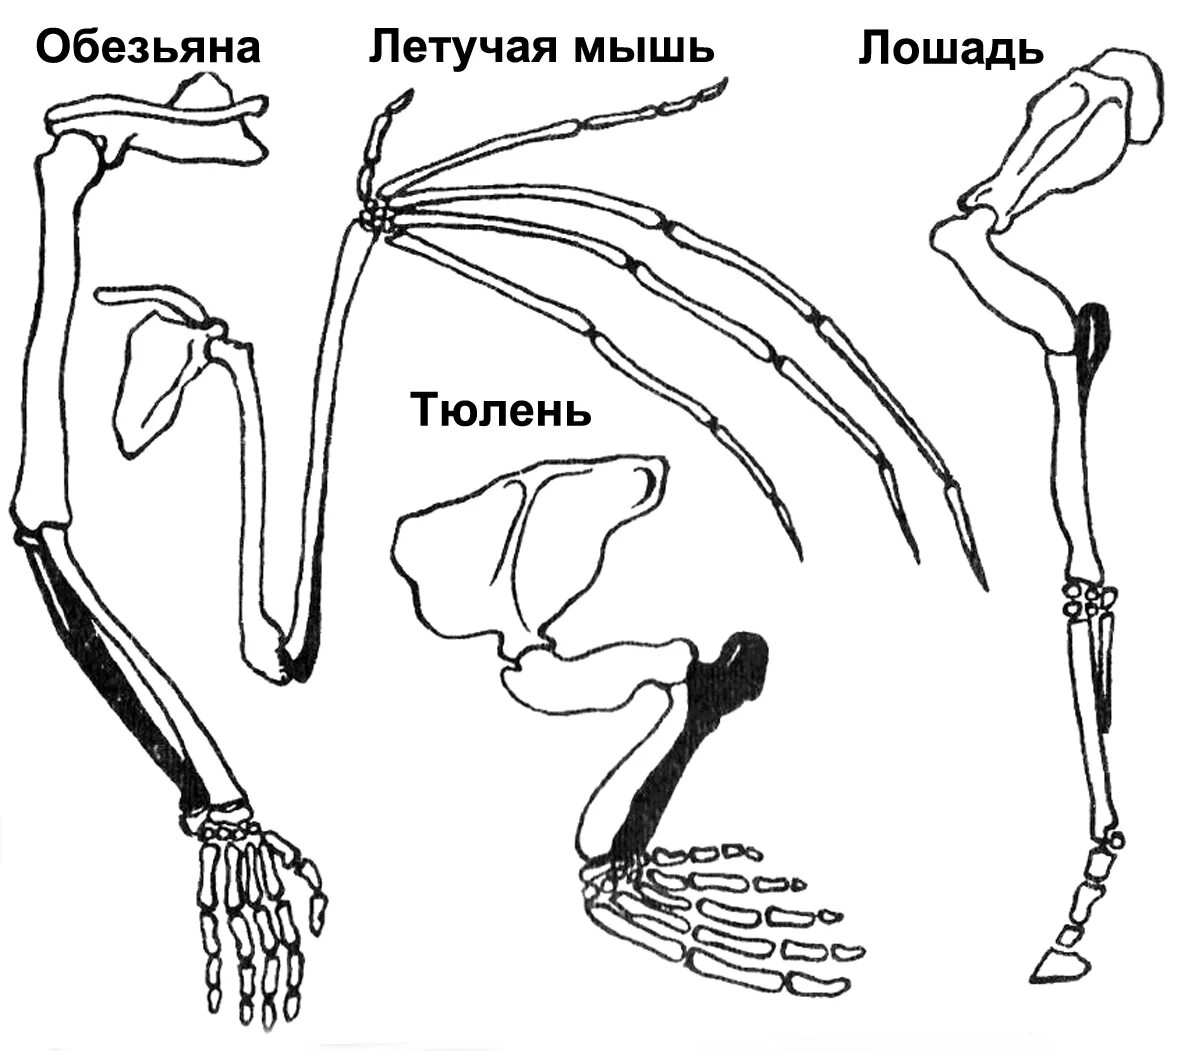 Скелет передних и задних конечностей млекопитающих. Скелет пояса задних конечностей млекопитающих. Пояс задних конечностей у млекопитающих. Строение задних конечностей млекопитающих. Строение скелета верхней конечности позвоночных животных.